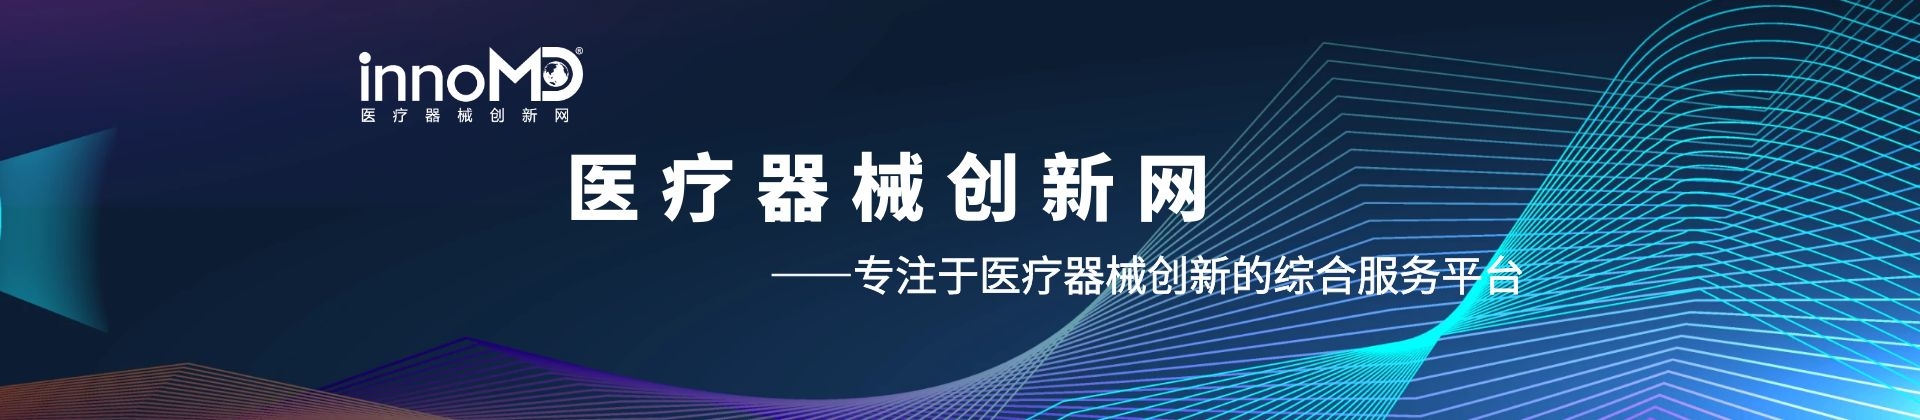 科创中国协作站-医疗器械创新网